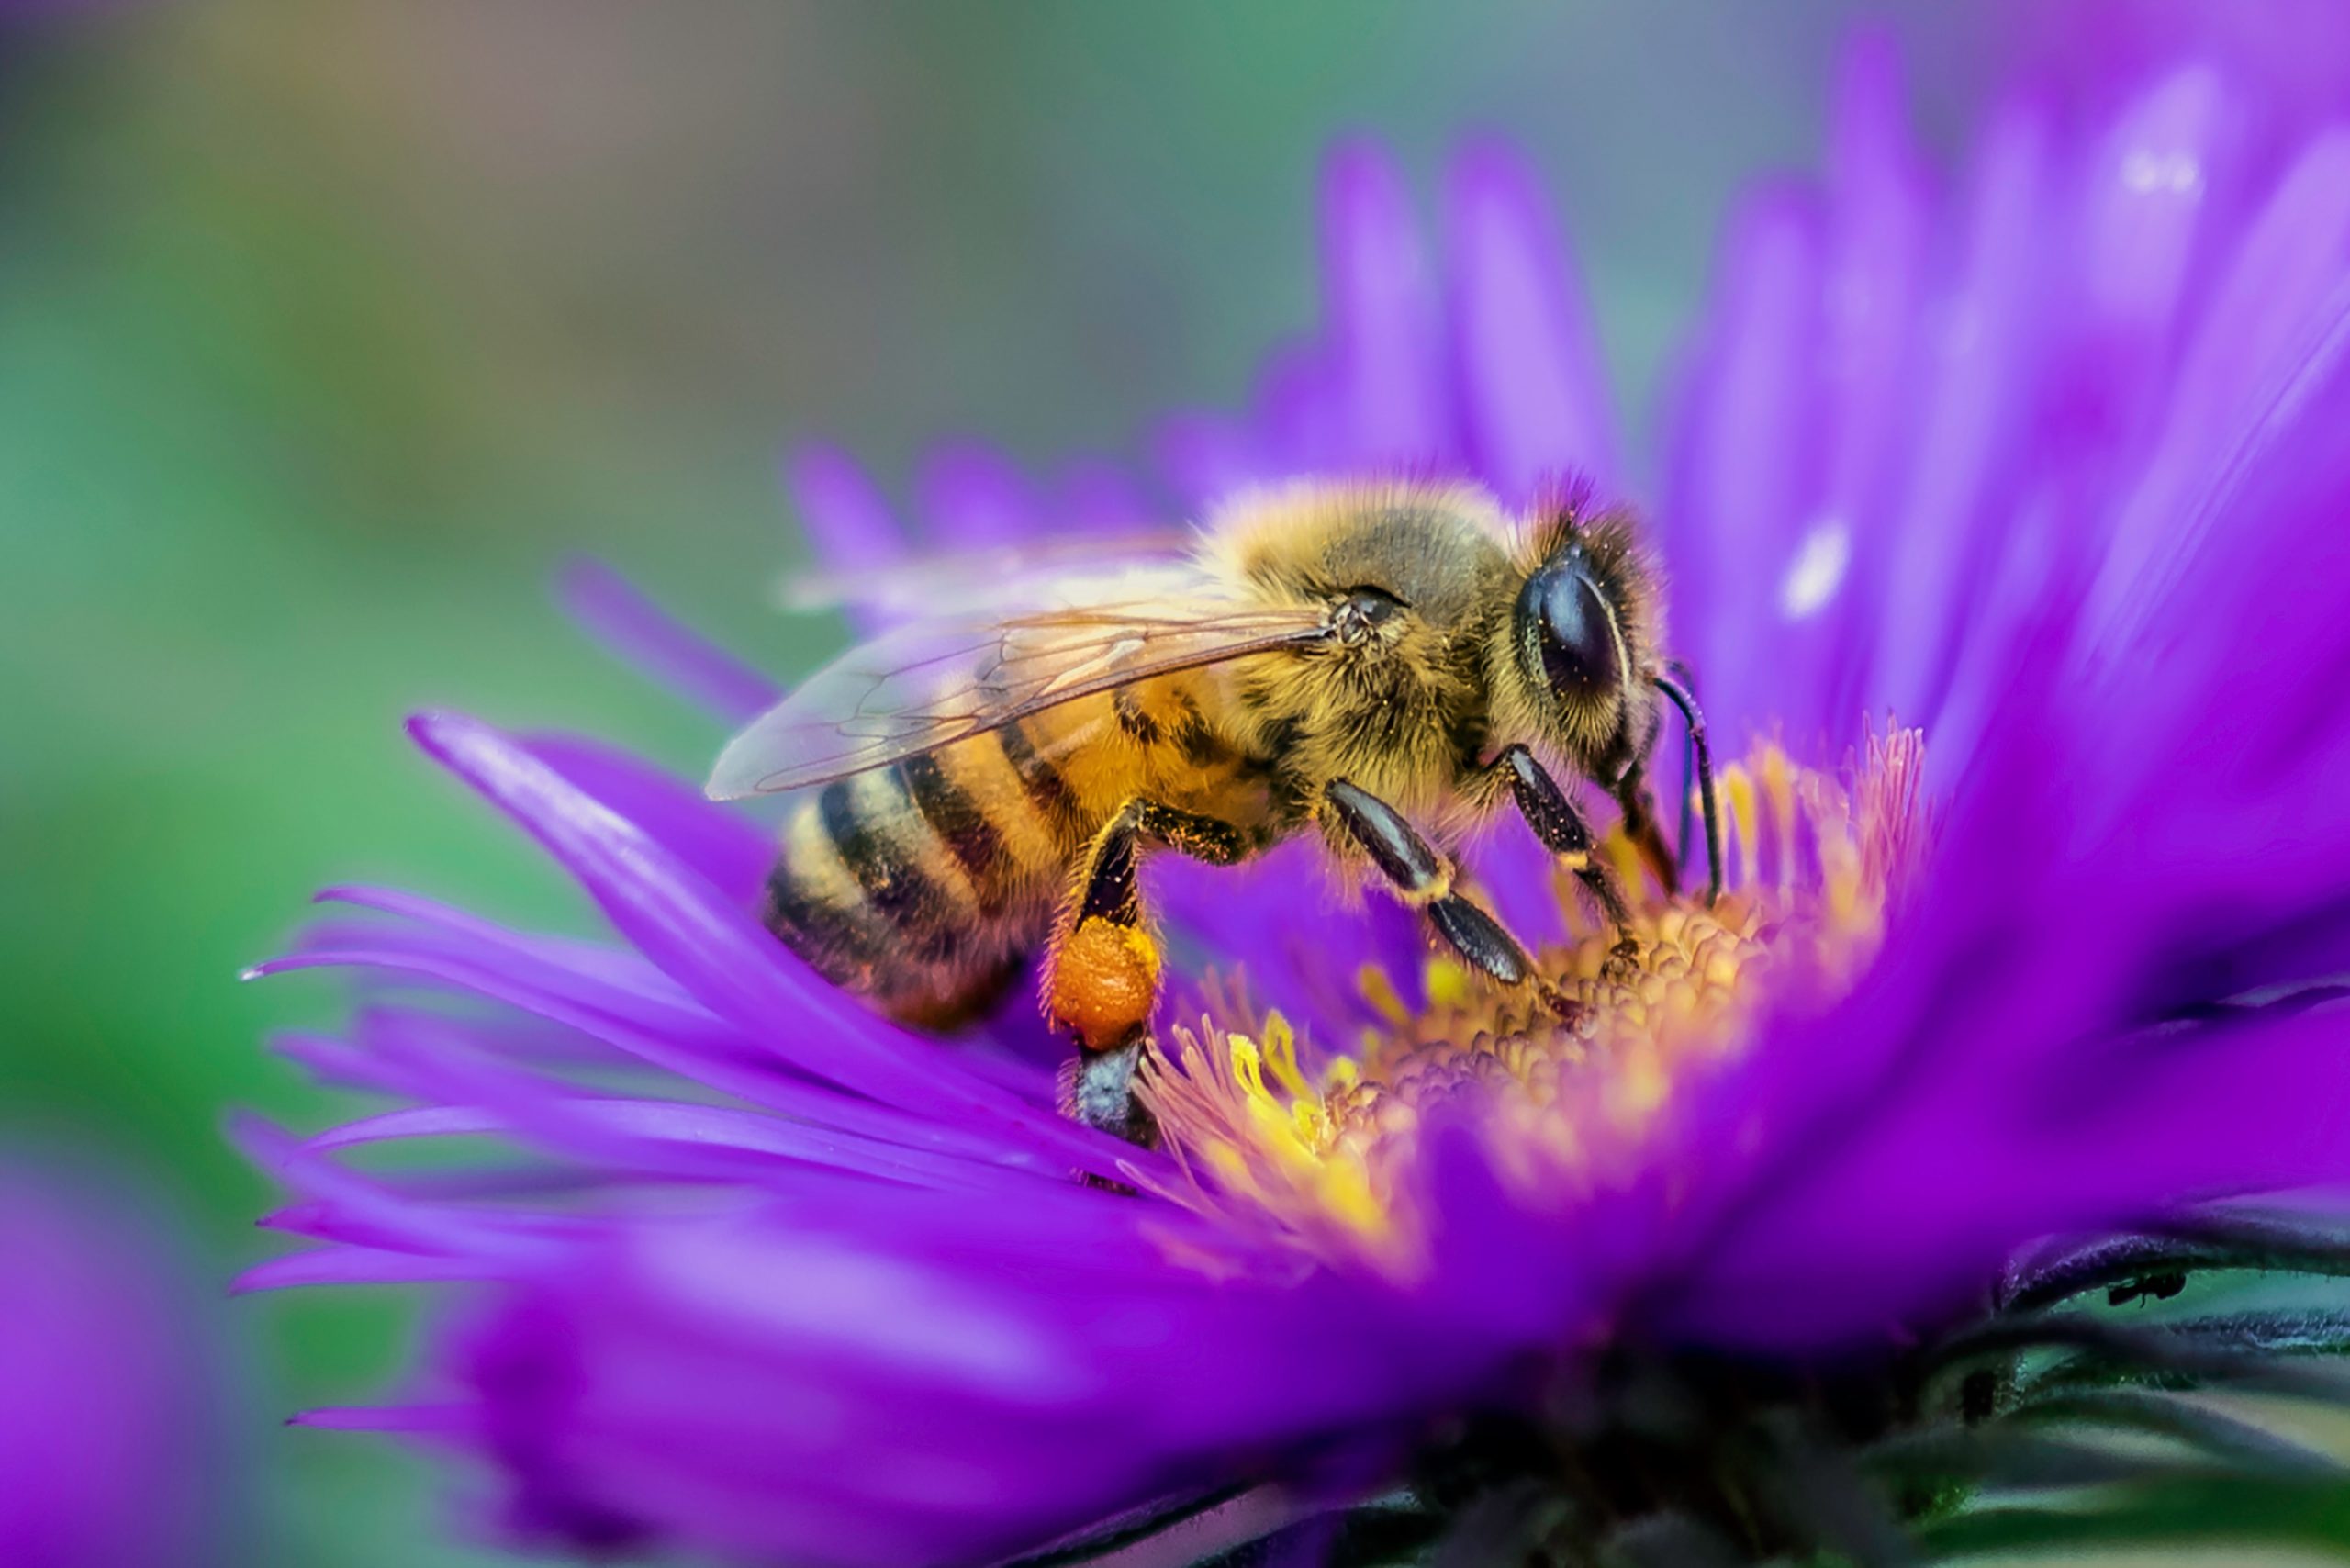 Serbuk sari jadi tempat hidup ratusan virus tanaman